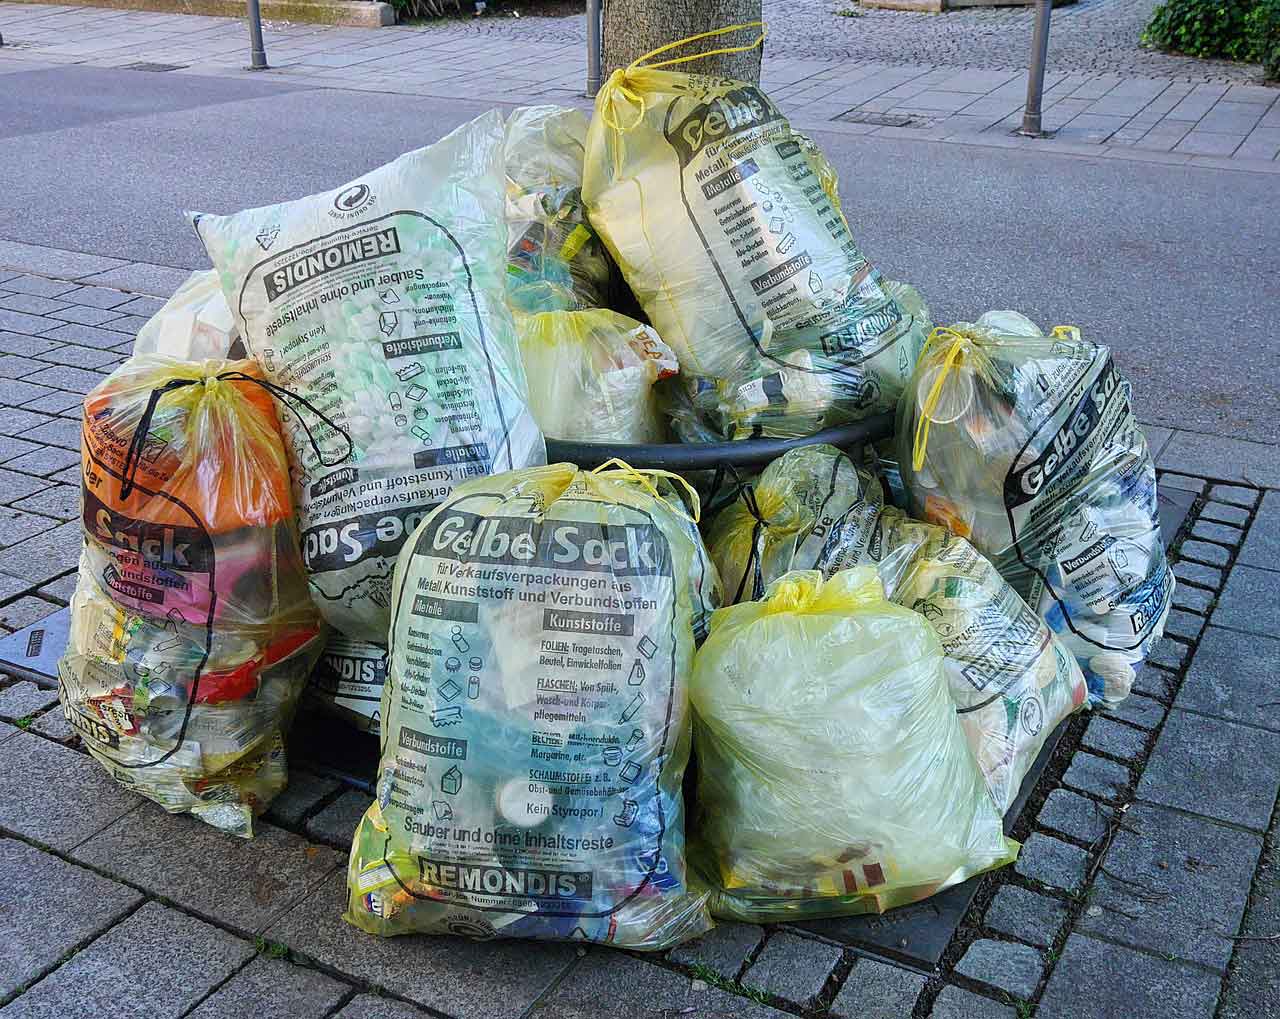 Gelber Sack gelbe Säcke DSD Müllsäcke Müllbeutel Abfallsäcke Abfallbeutel